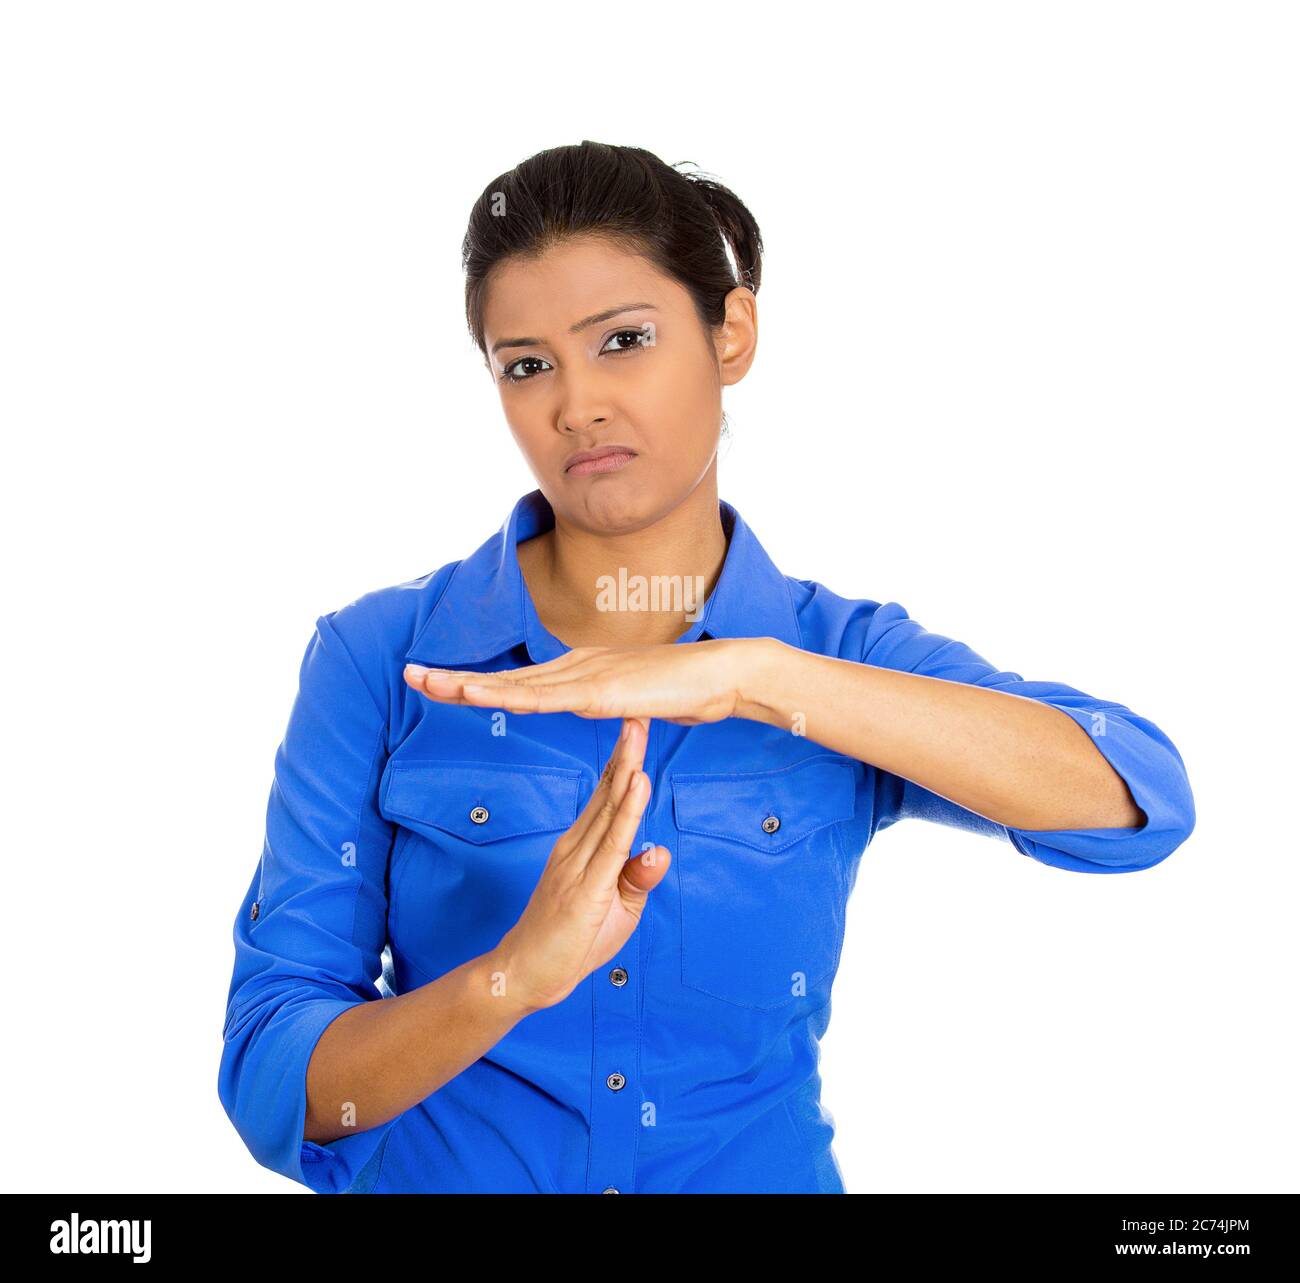 Porträt einer jungen ernsthaften Frau, die eine Auszeit-Geste mit Händen isoliert auf weißem Hintergrund zeigt Stockfoto